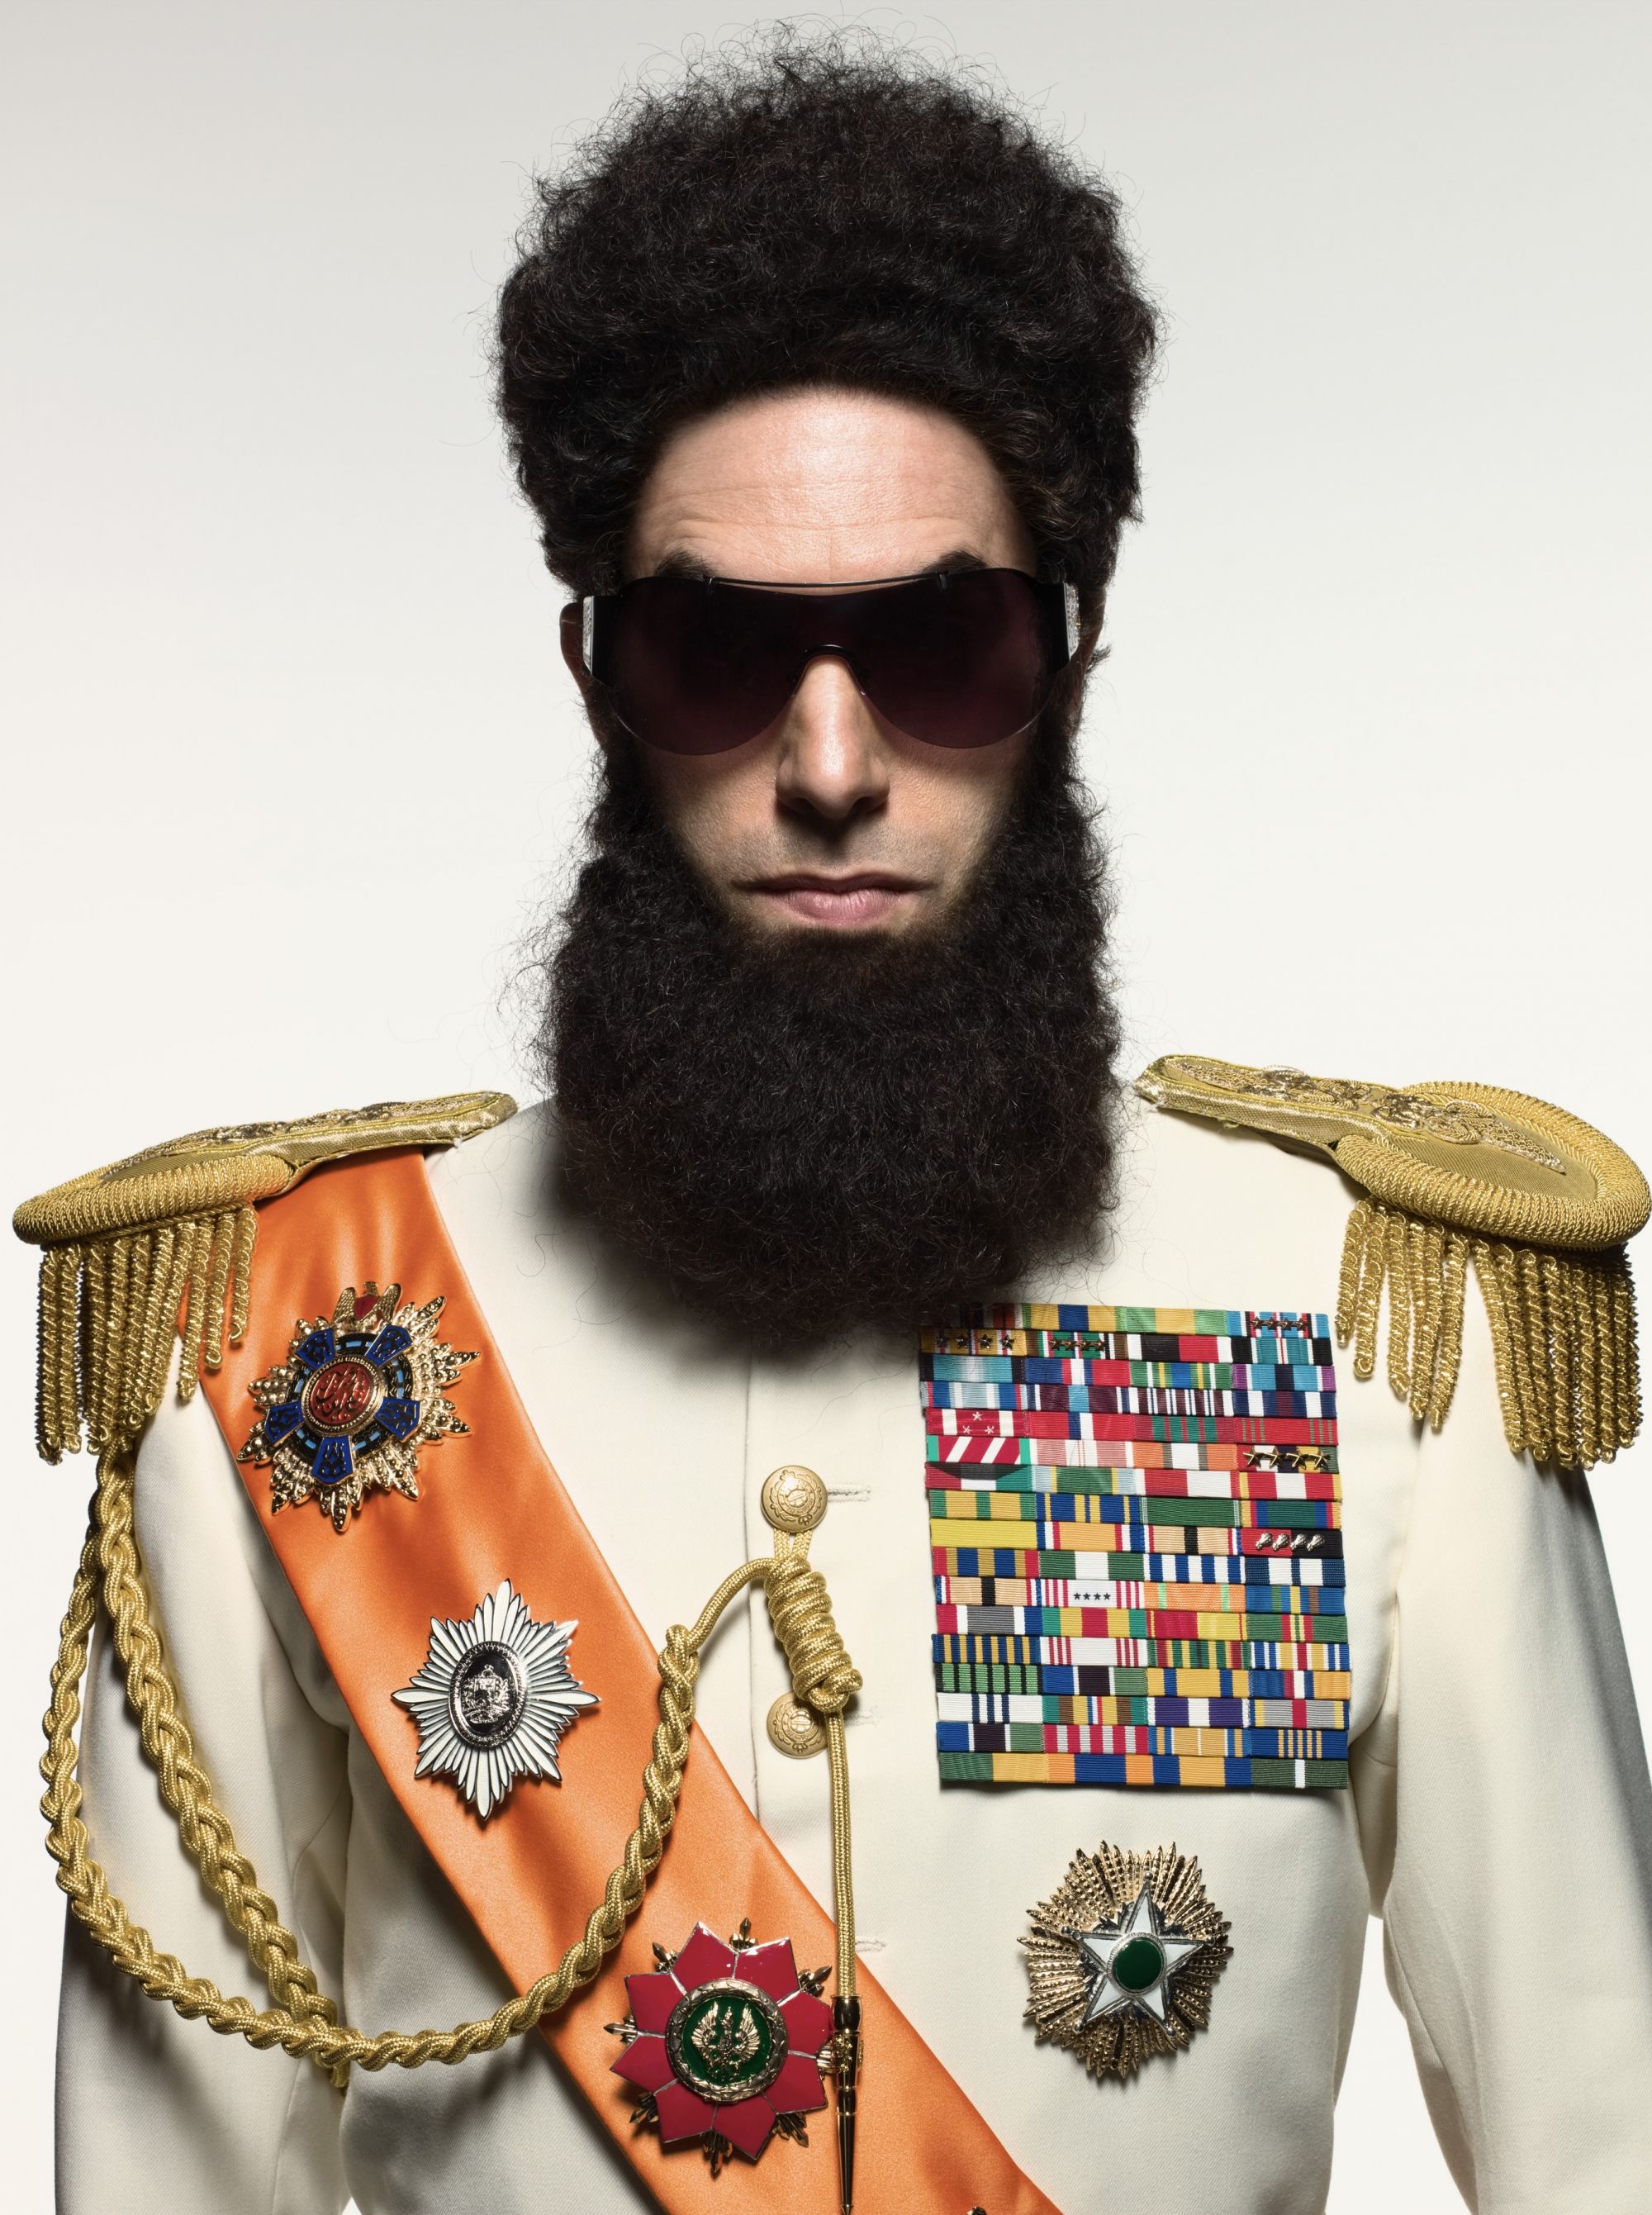 Sacha Baron Cohen as The Dictator